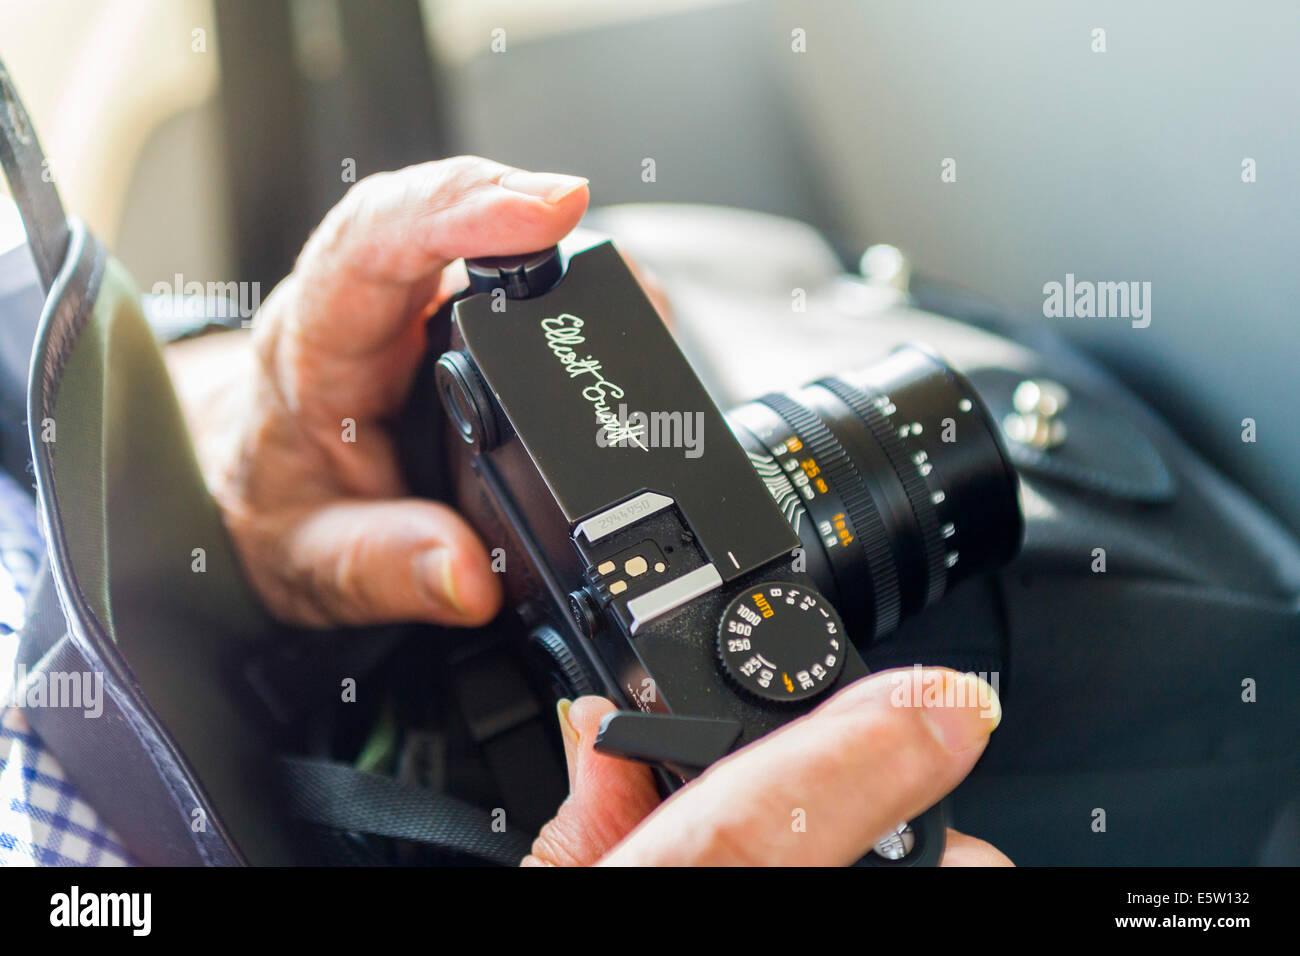 Elliott Erwitt fotógrafo de Magnum mantiene su cámara Leica M6 negro con su firma grabada en el panel superior. Por 0400 Foto de stock